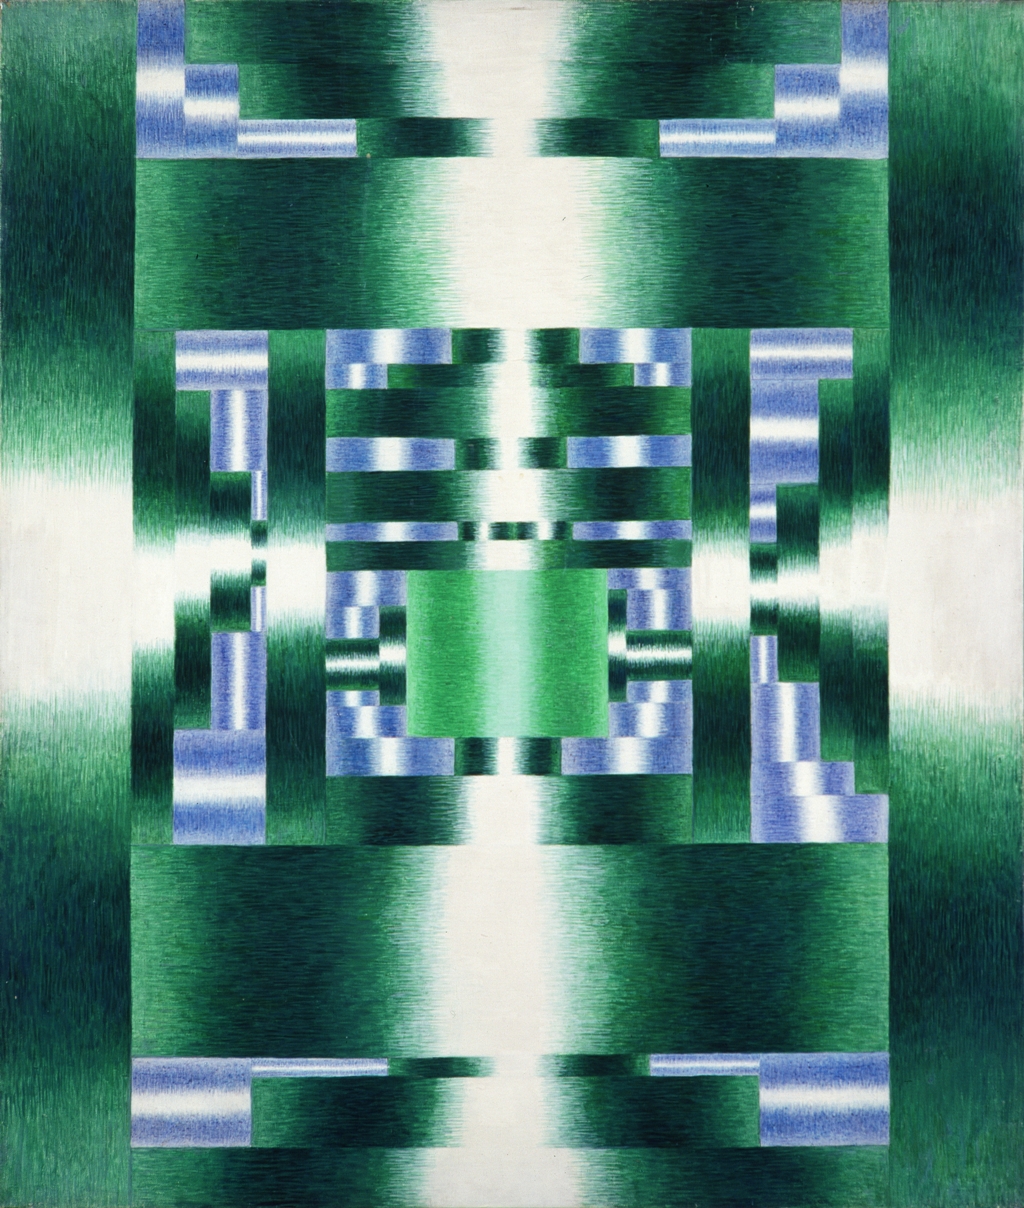 Zofia Artymowska, Poliformy XXXVII - Zielone centrum, 1973, akryl na płótnie, wym. 114 x 97,5 cm, źródło https://zacheta.art.pl/pl/kolekcja/katalog